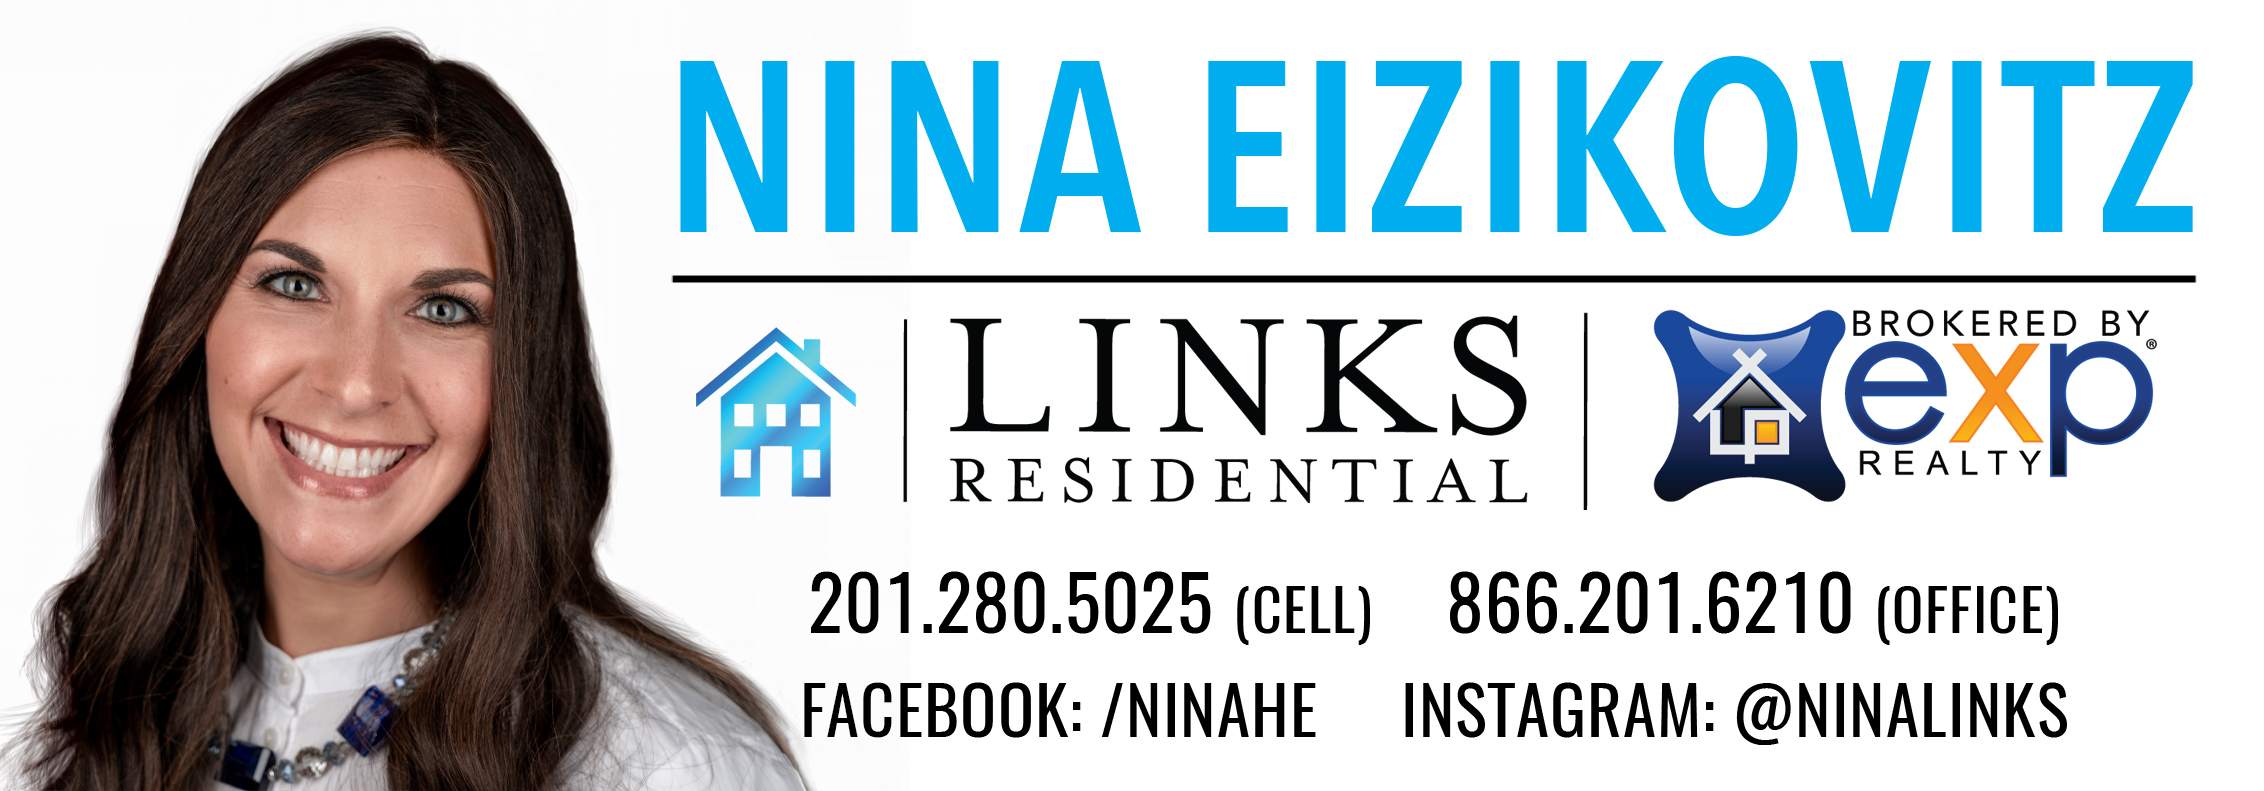 Nina Eizikovitz - Links @ EXP